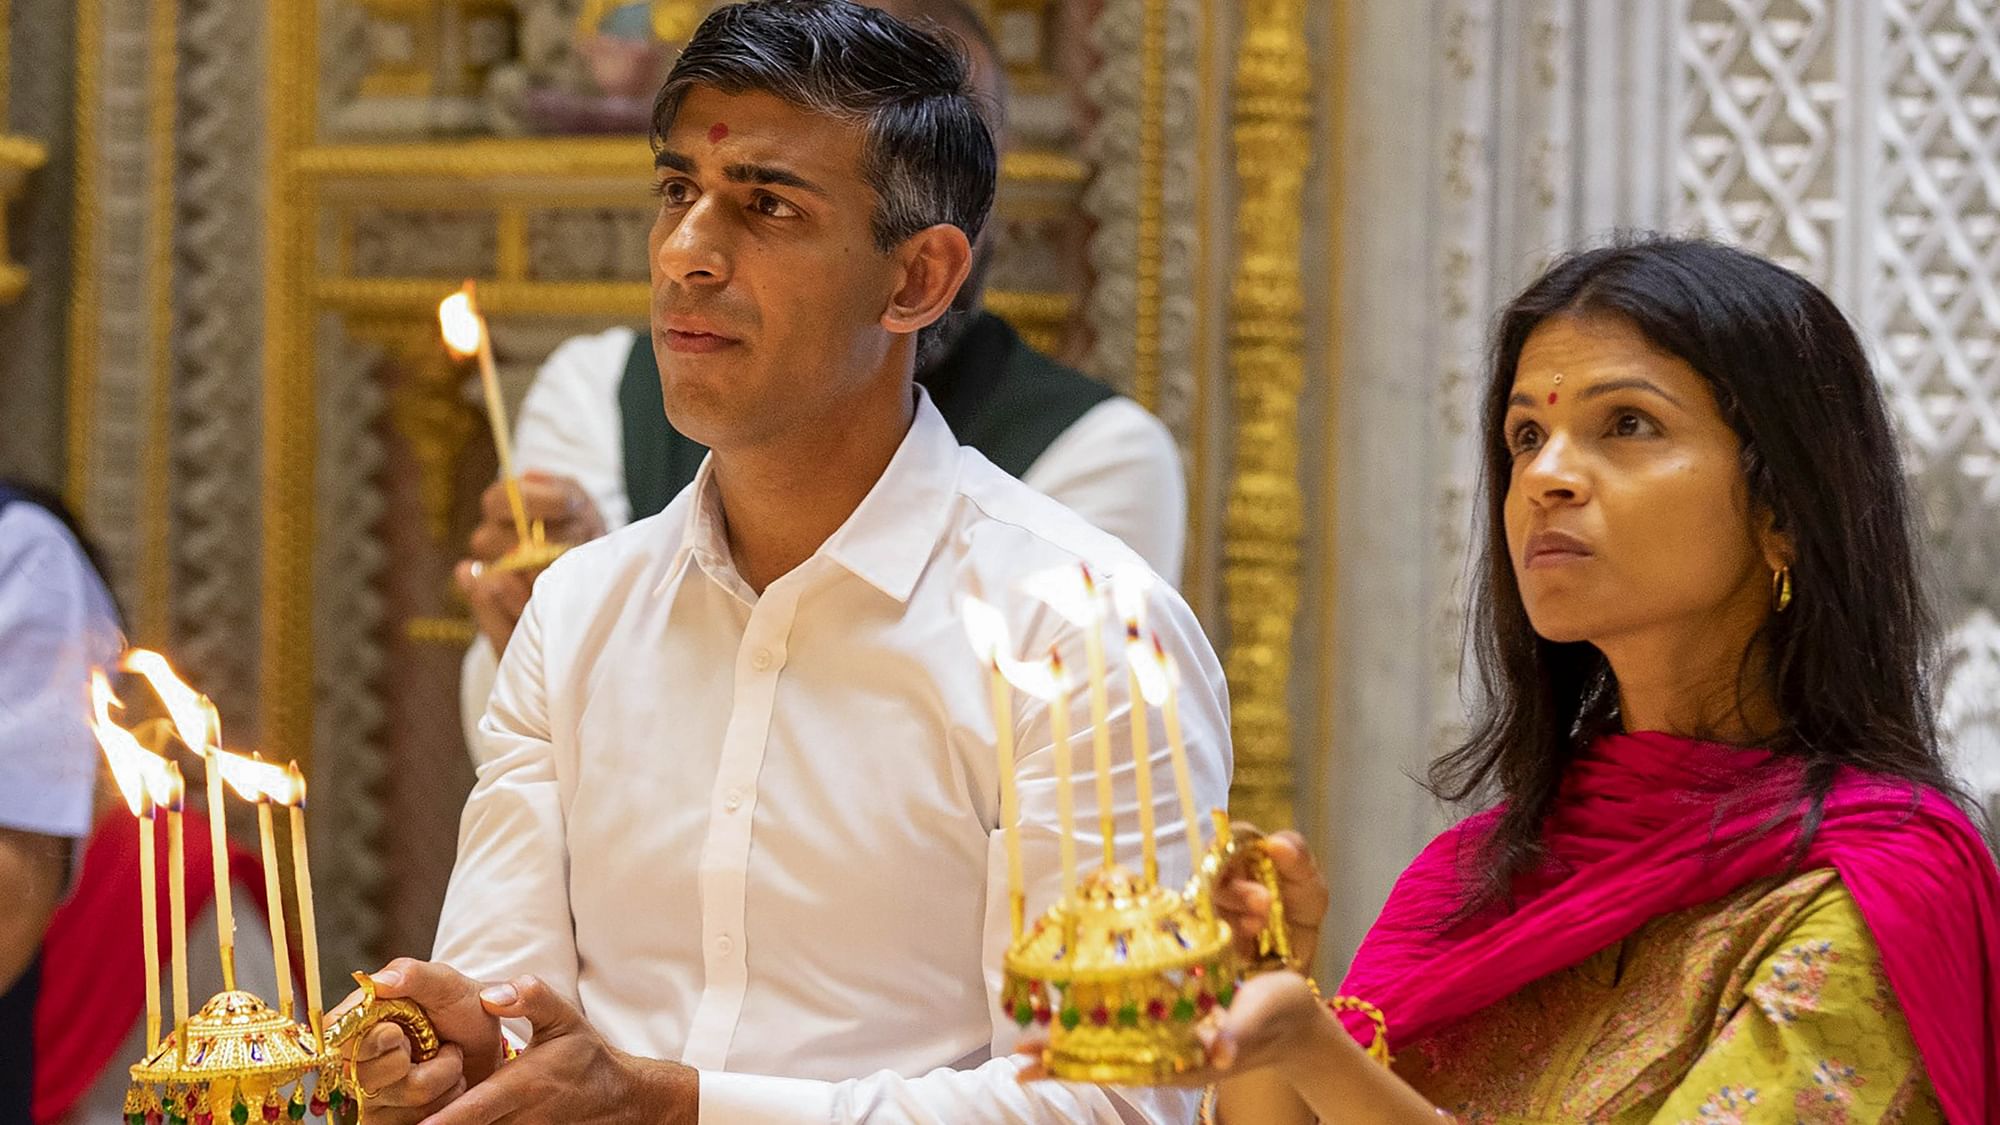 <div class="paragraphs"><p>Photos: UK PM Rishi Sunak, Wife Akshata Murthy at Delhi's Akshardham Temple</p></div>